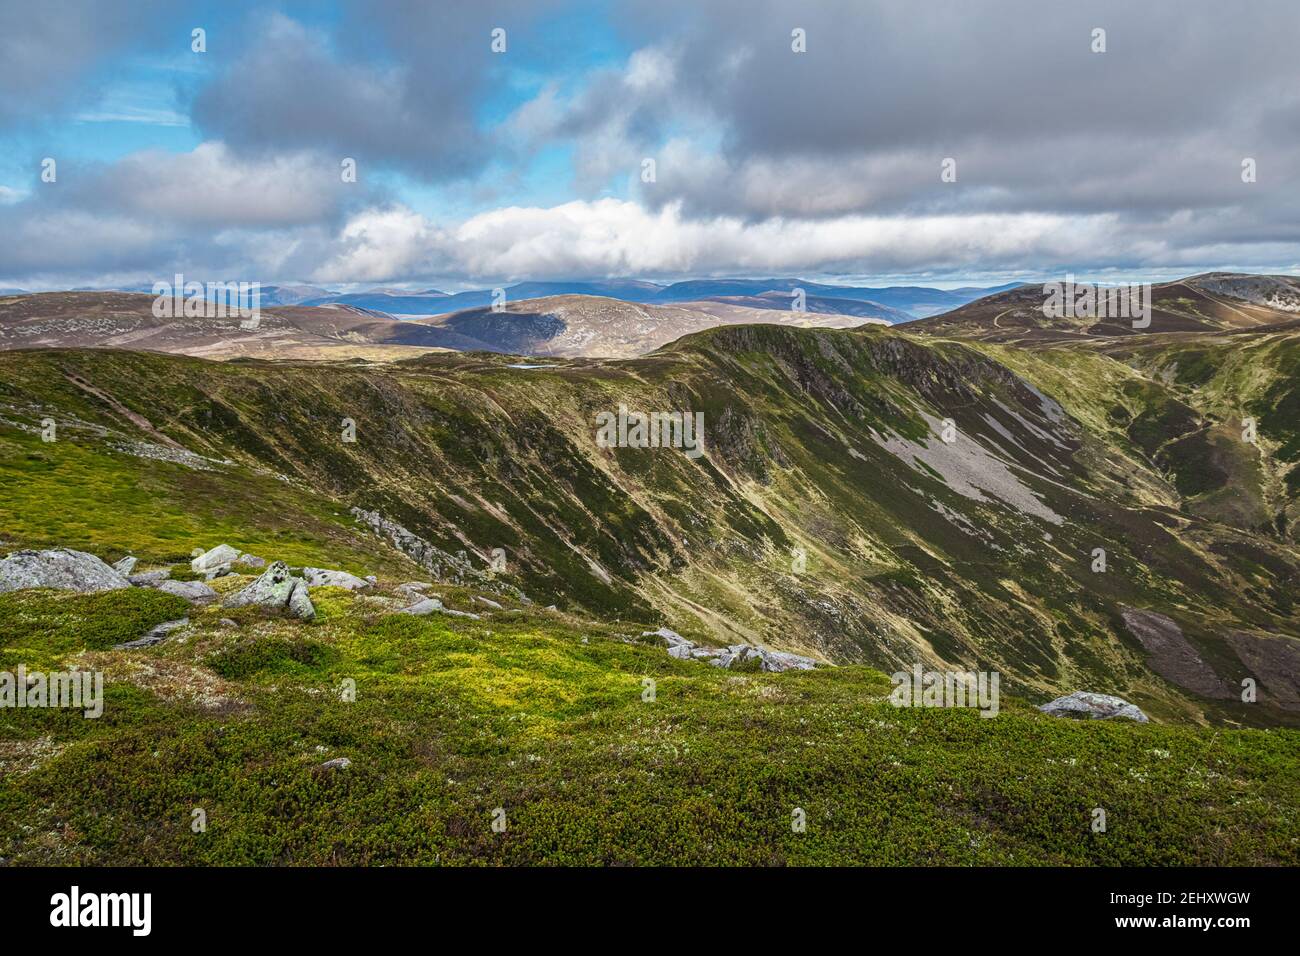 Vista panoramica sulle montagne con spazio aperto e soffici nuvole bianche all'orizzonte. Estate al Cairngorm Nationl Park nelle Highlands scozzesi. Foto Stock